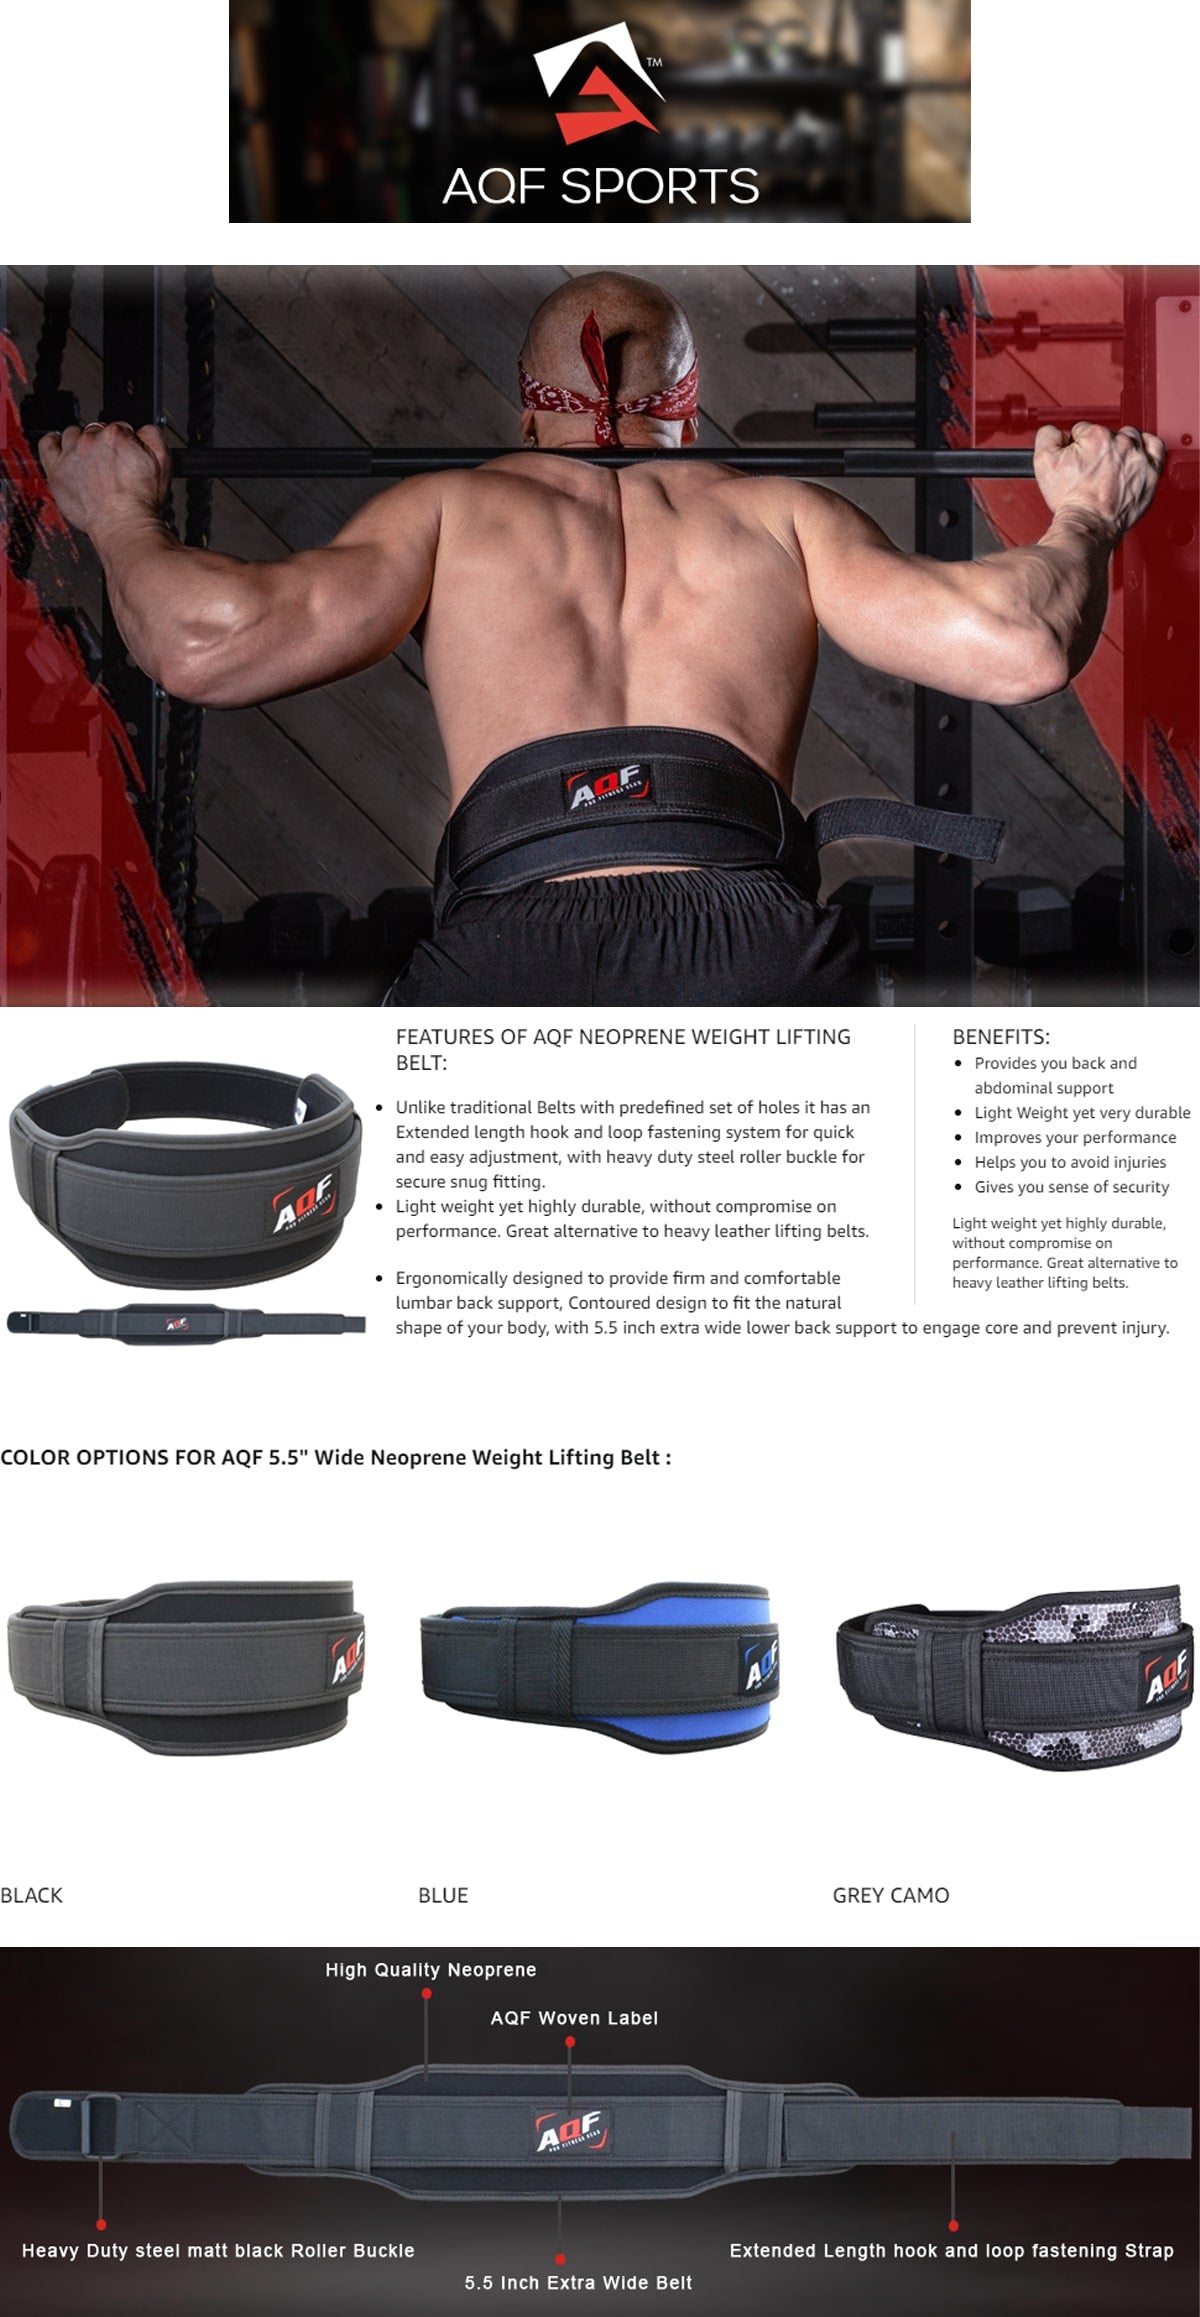 Features of Neoprene Weightlifting Belt